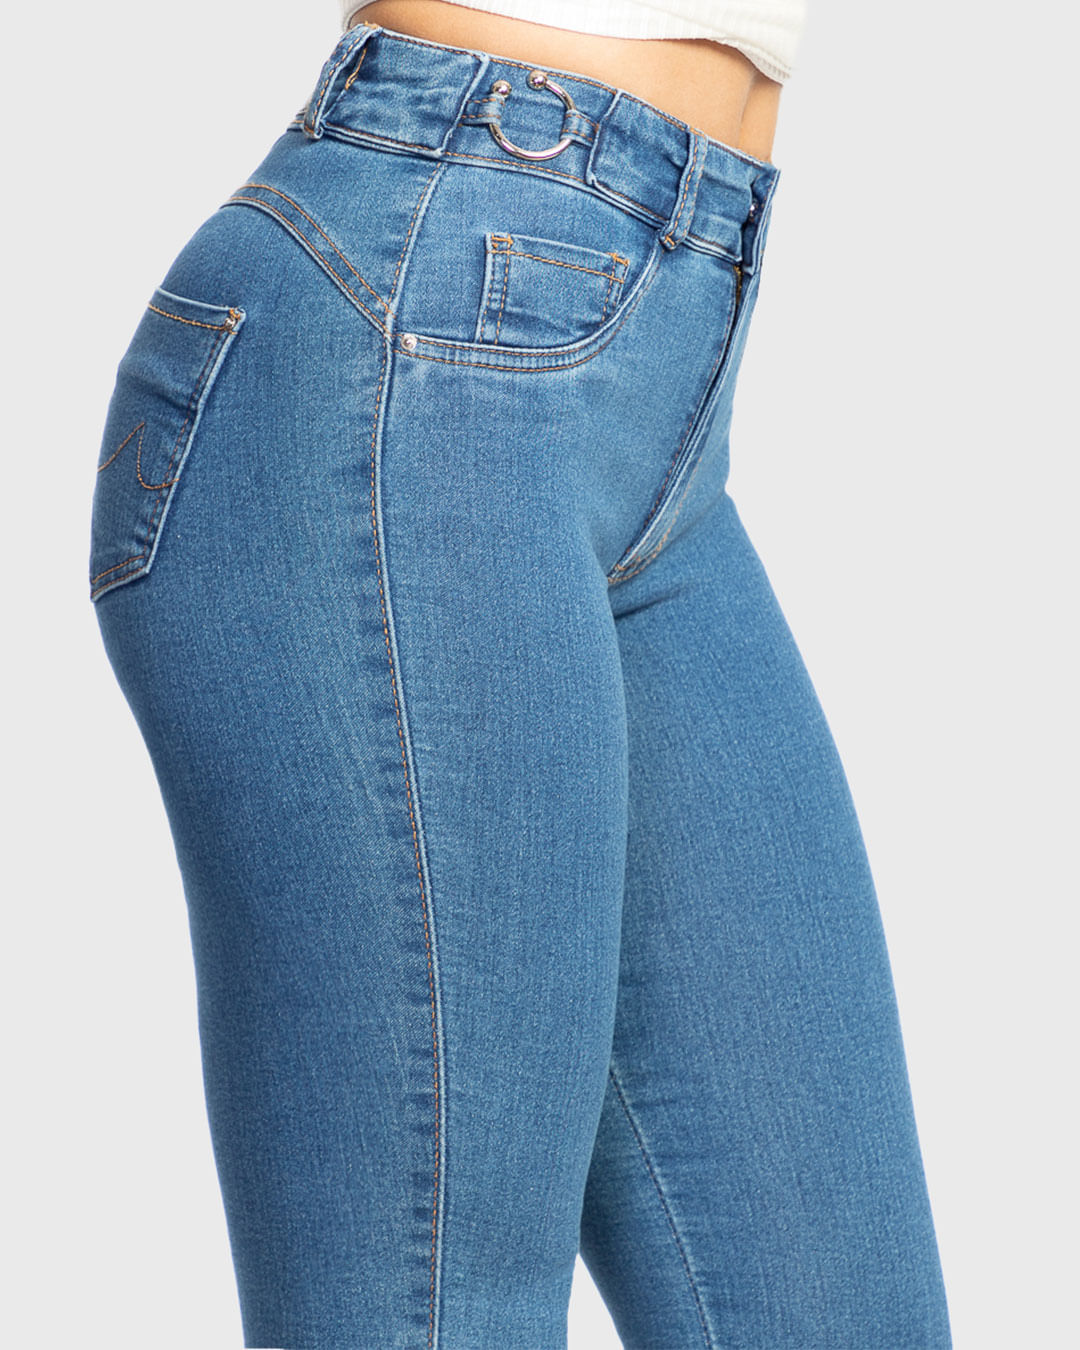 Calca-19422-Jeans-Skn-Fem-Ad---Blue-Jeans-Medio